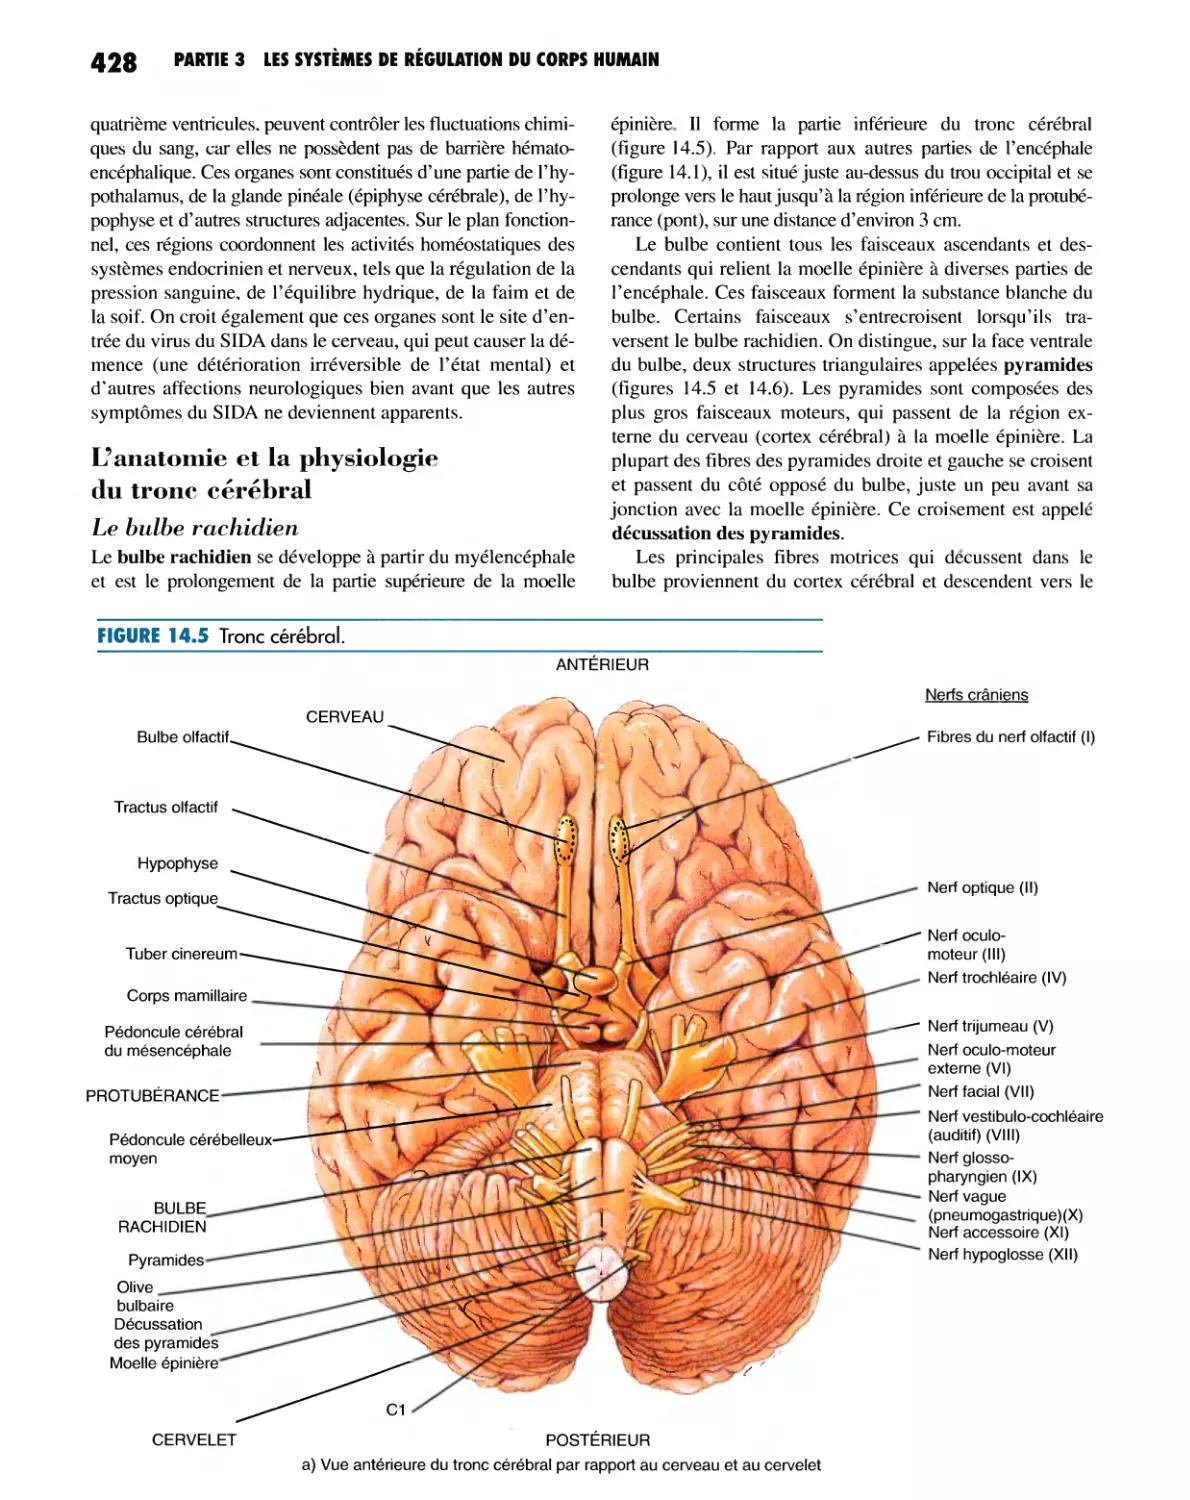 L'anatomie et la physiologie du tronc cérébral